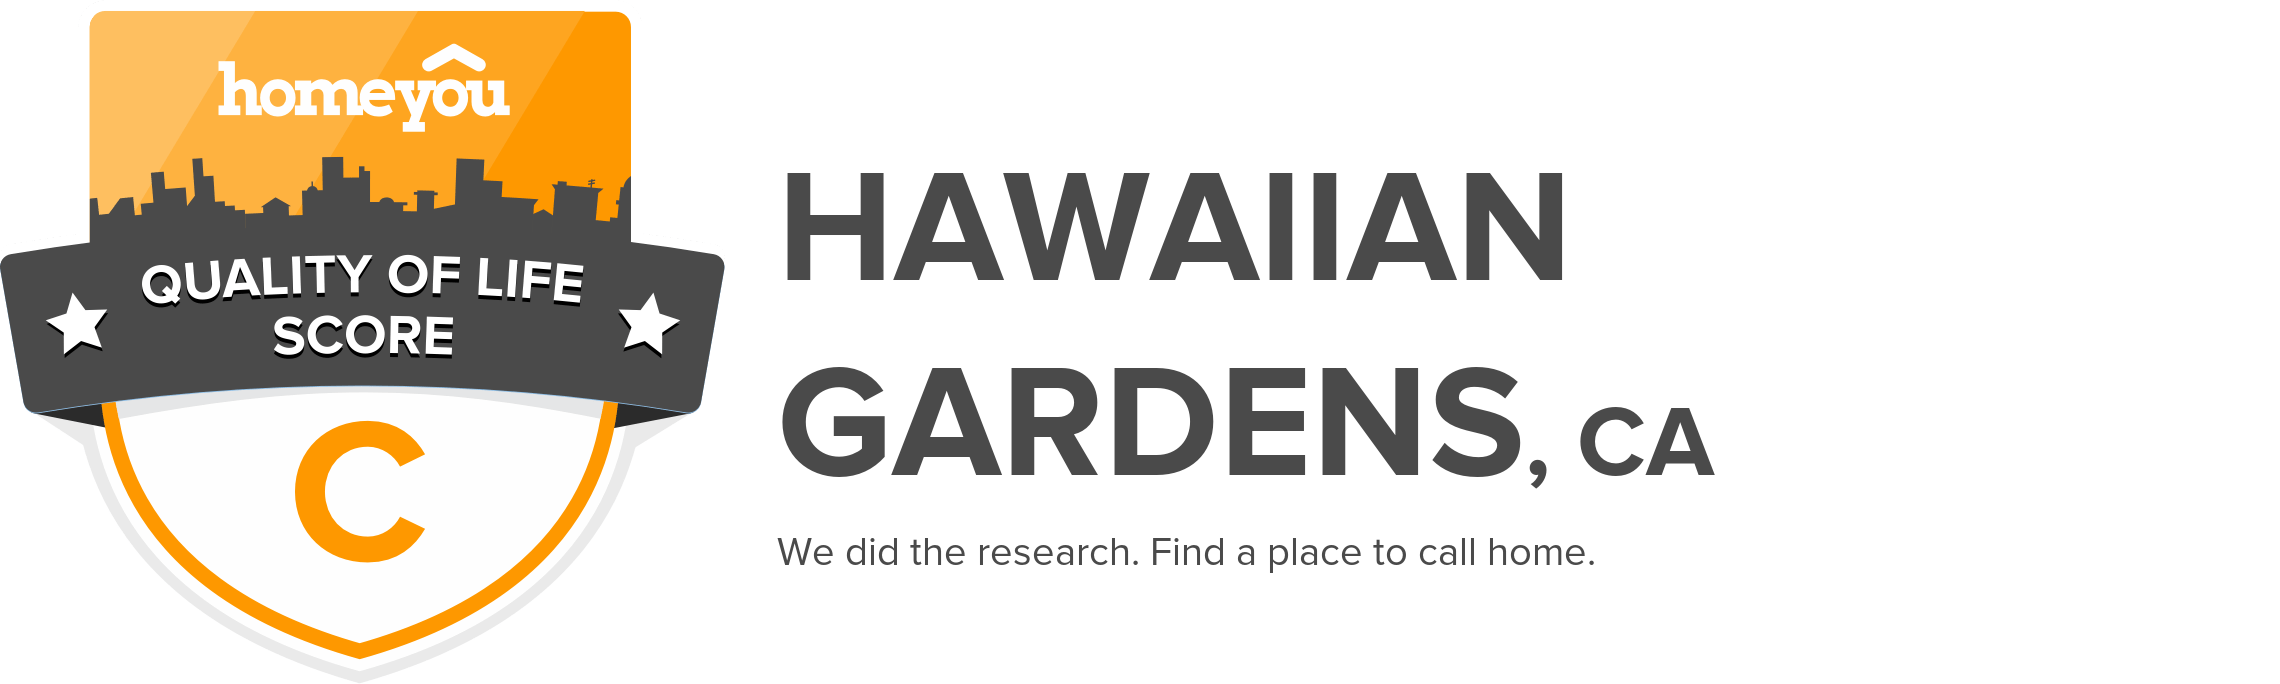 Hawaiian Gardens, CA